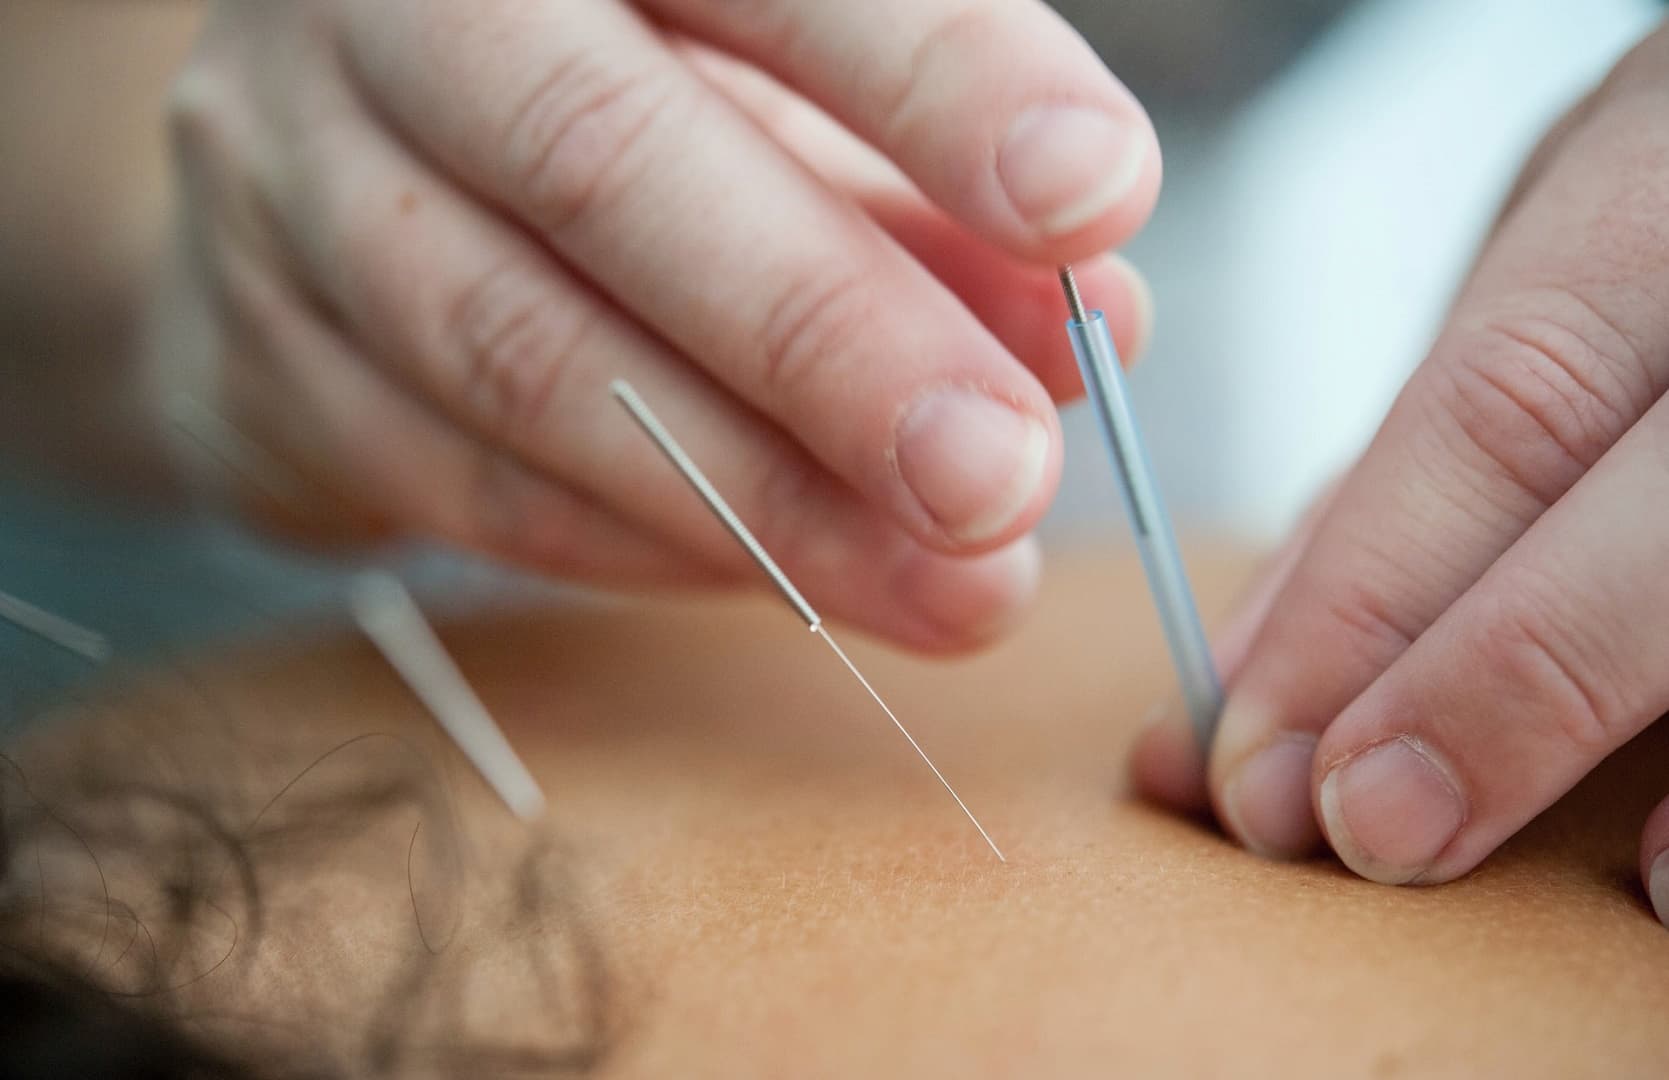 Acupuncture courses in Australia